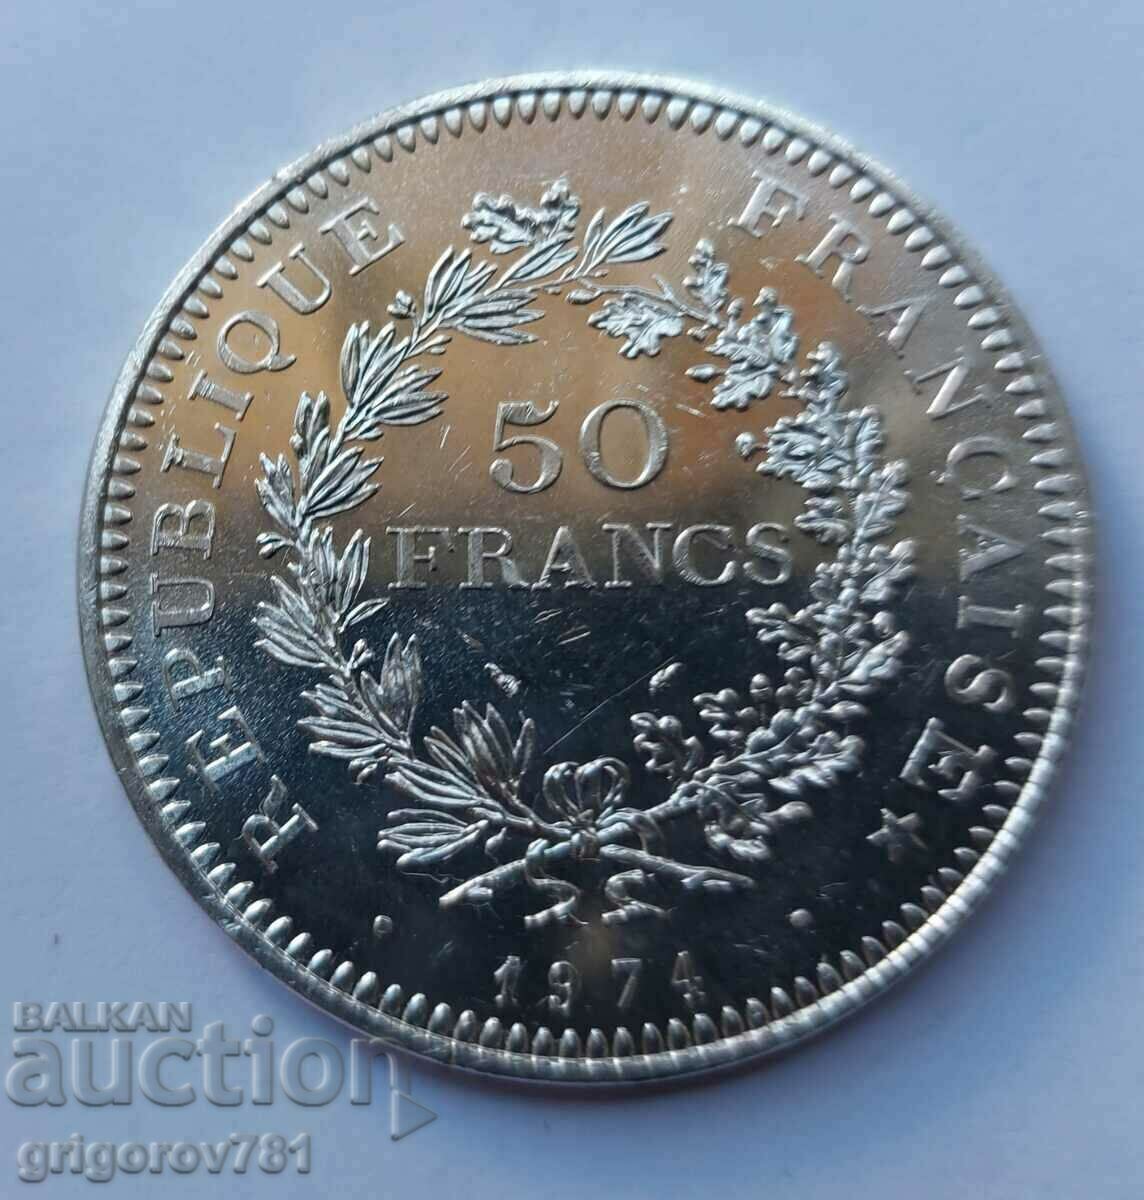 50 Φράγκα Ασήμι Γαλλία 1974 - Ασημένιο νόμισμα #16